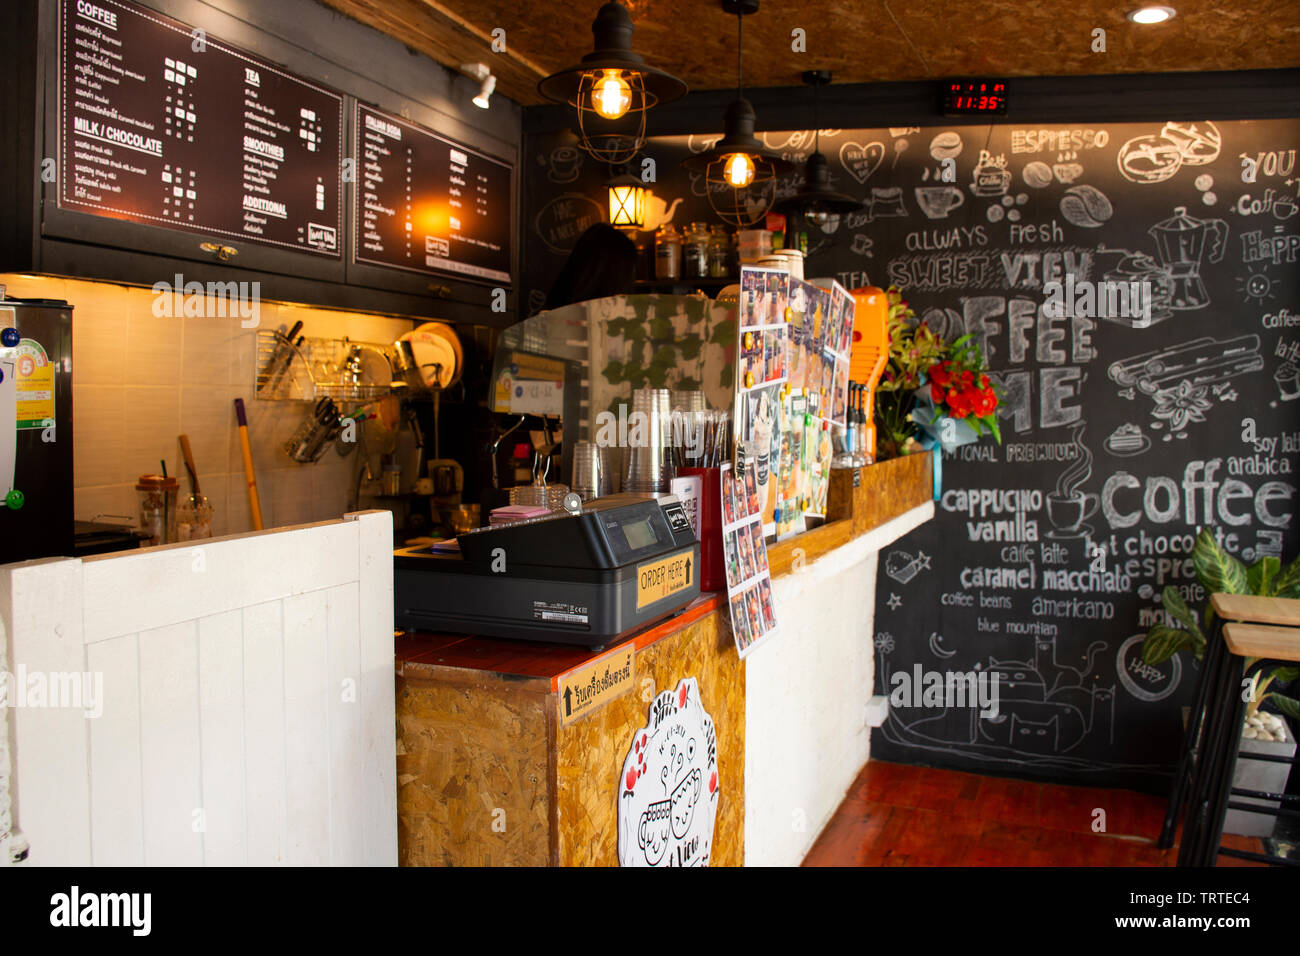 Dekoration Möbel und Interior Design von lokalen Coffee Shop für ...